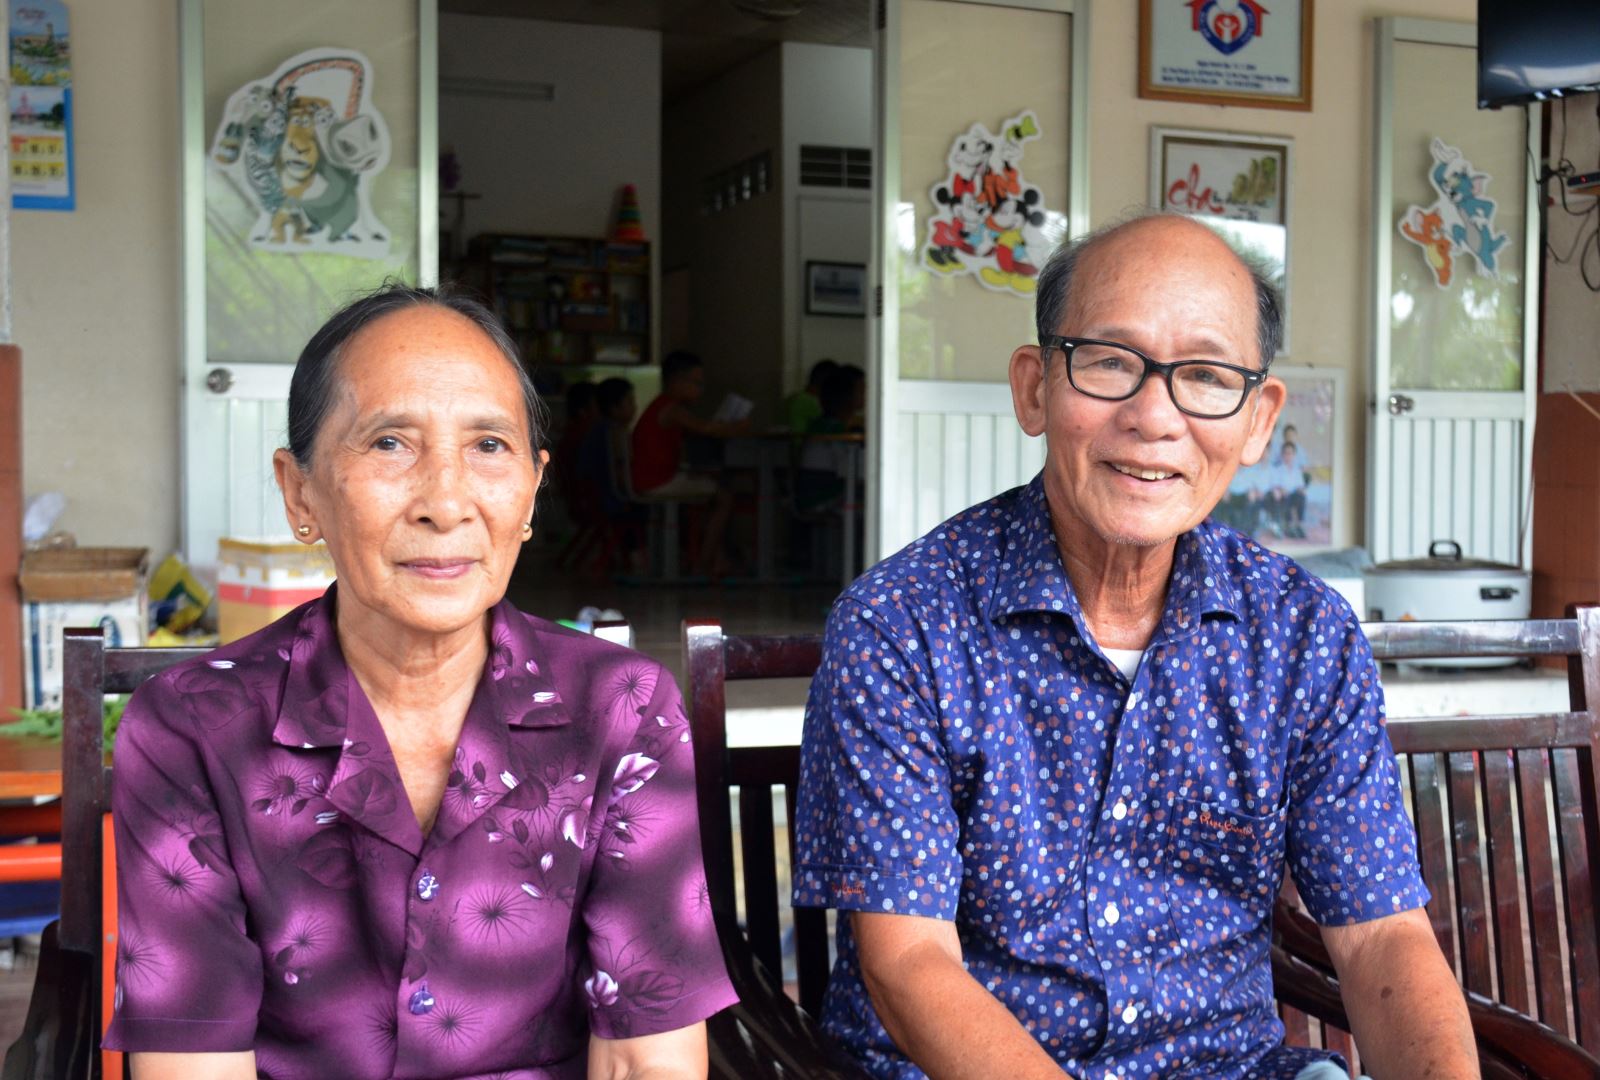 Gia sản” của Ðôi vợ chồng già | Ủy ban Đoàn kết Công giáo Việt Nam